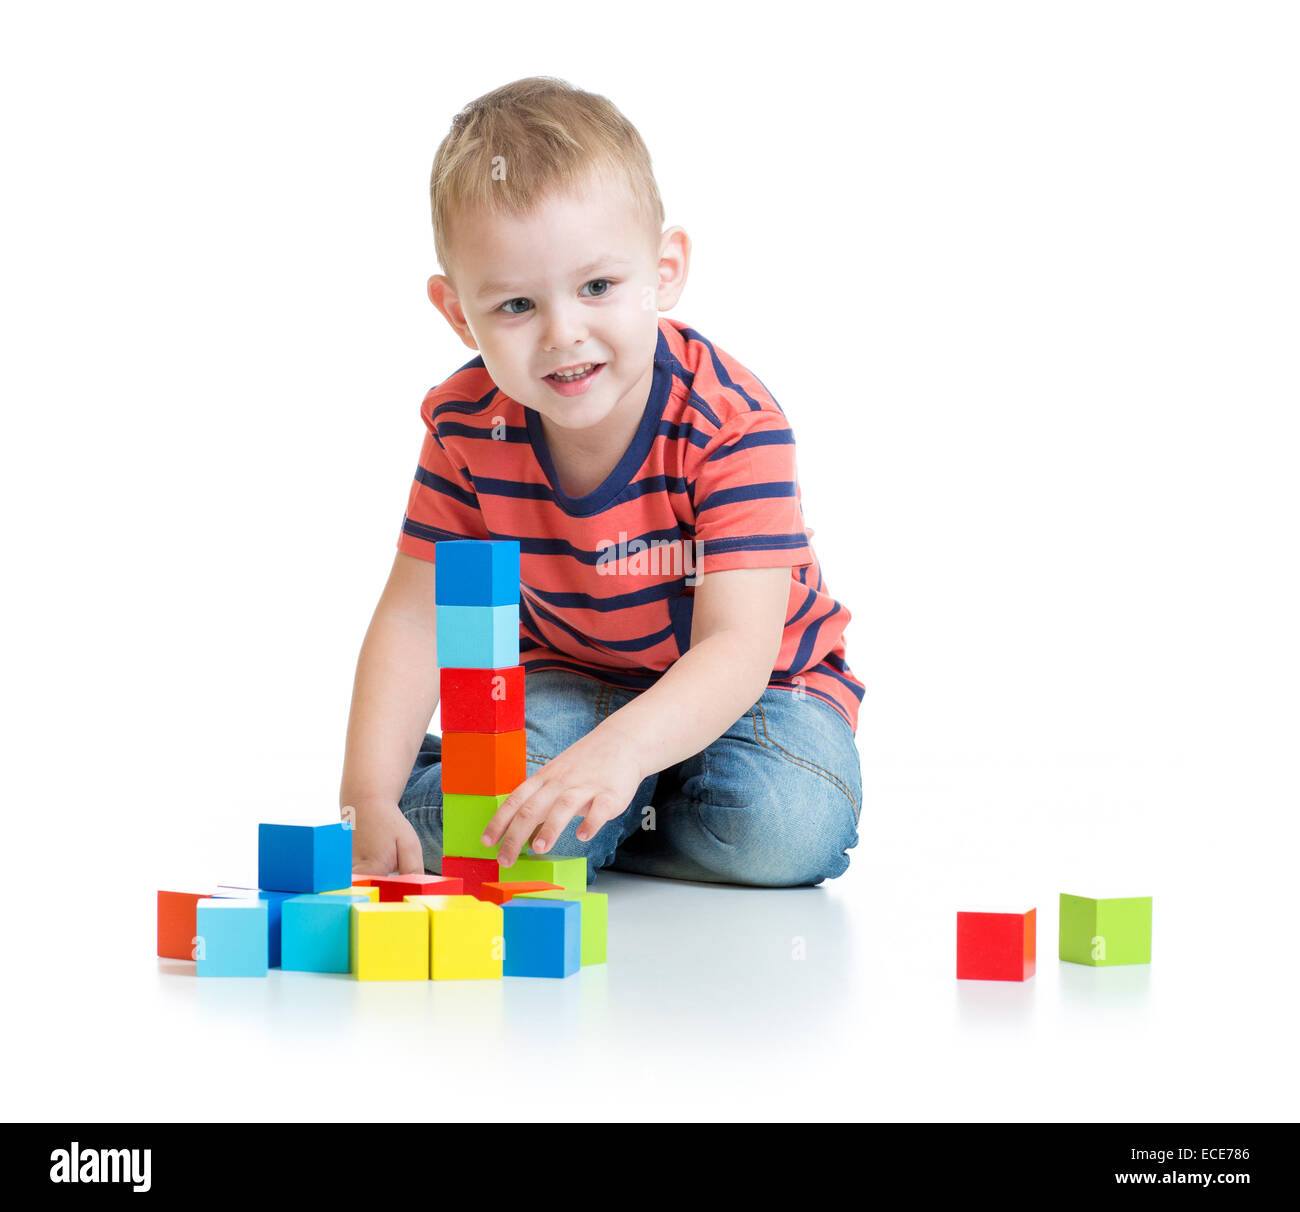 Kid jugar y construir una torre con bloques de colores Fotografía de stock  - Alamy